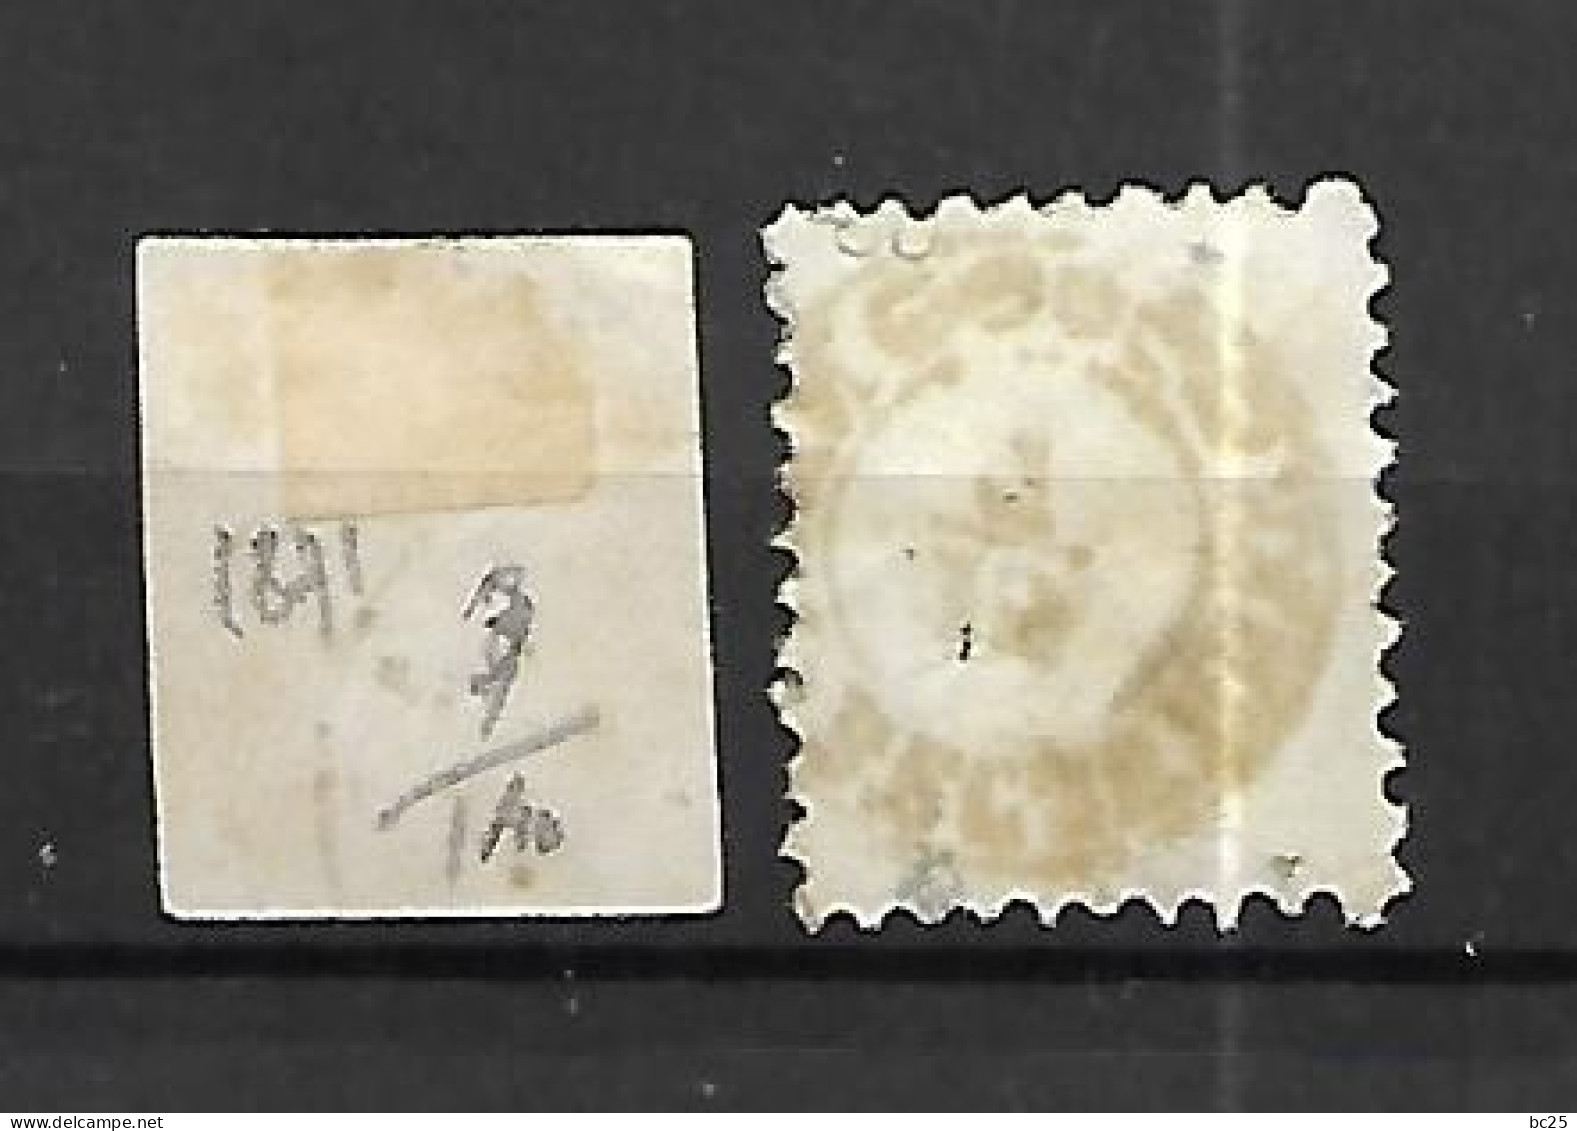 HONGRIE- 2 TRES BEAUX VIEUX TIMBRES OBLITERES- N° 3 NON DENTELE ET N°4 -PAS EMINCES -DE 1871- SCAN DU VERSO - Used Stamps